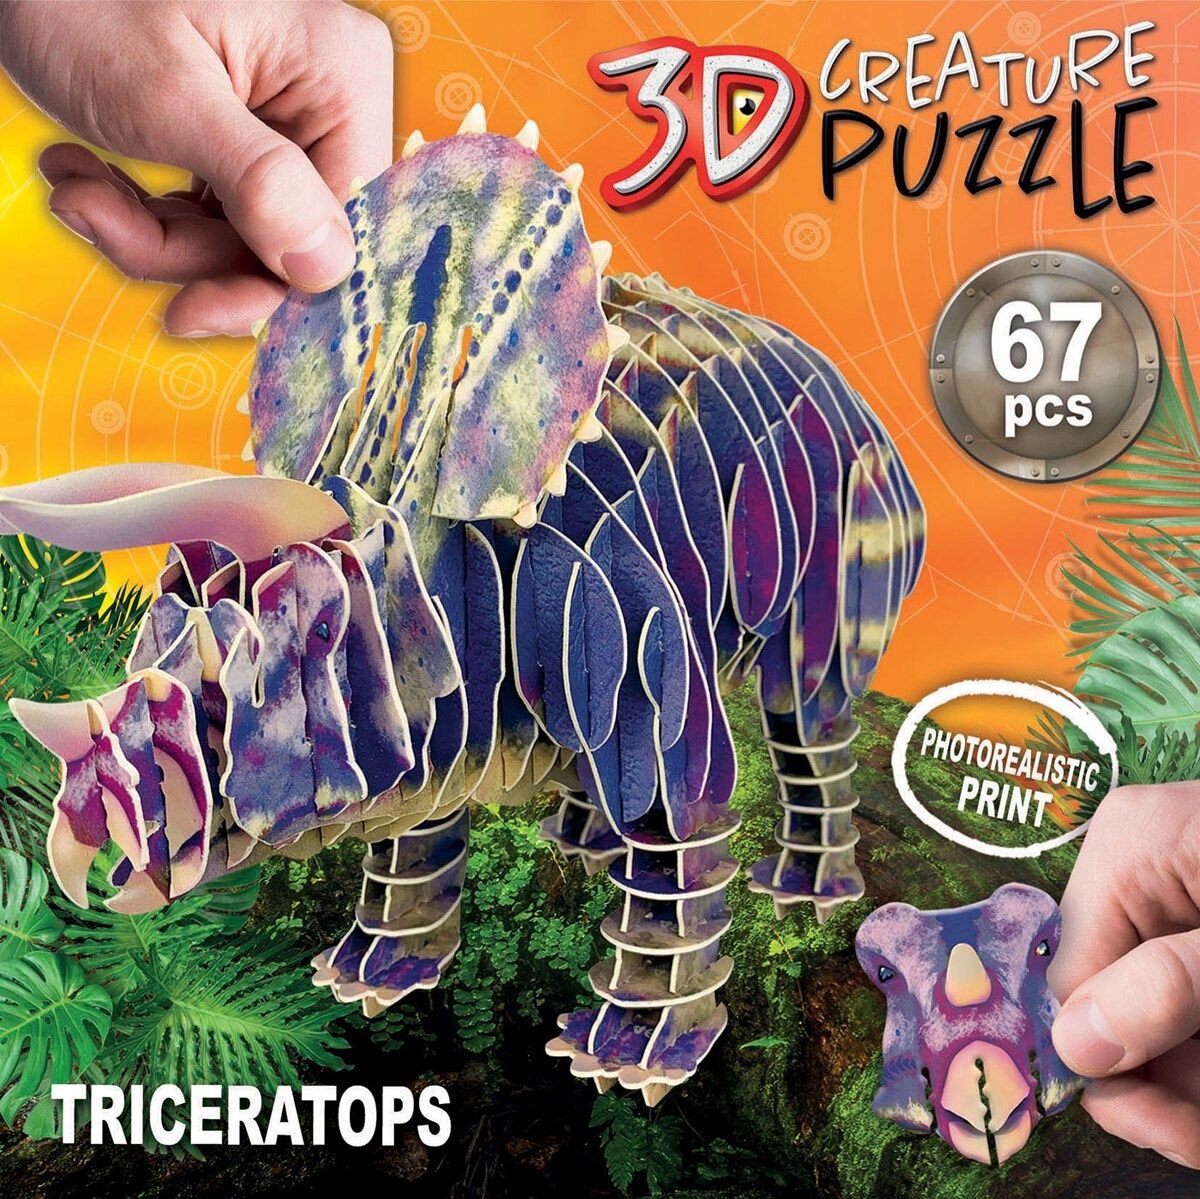 Educa 3D Pussel - Triceratops 67 bitar